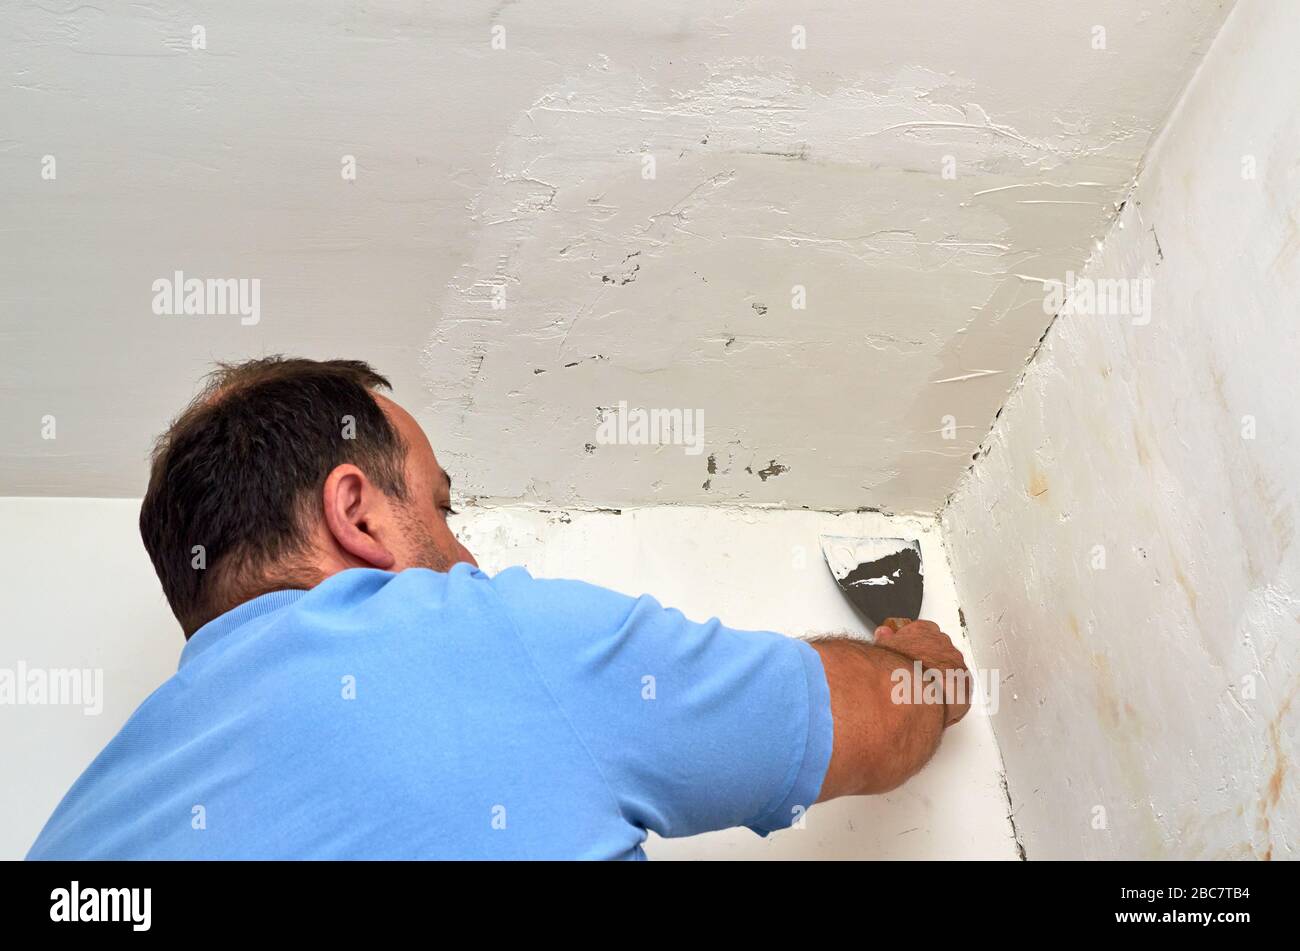 Uomo che mette lo spackle con una spatola su una parete durante i lavori di ristrutturazione Foto Stock